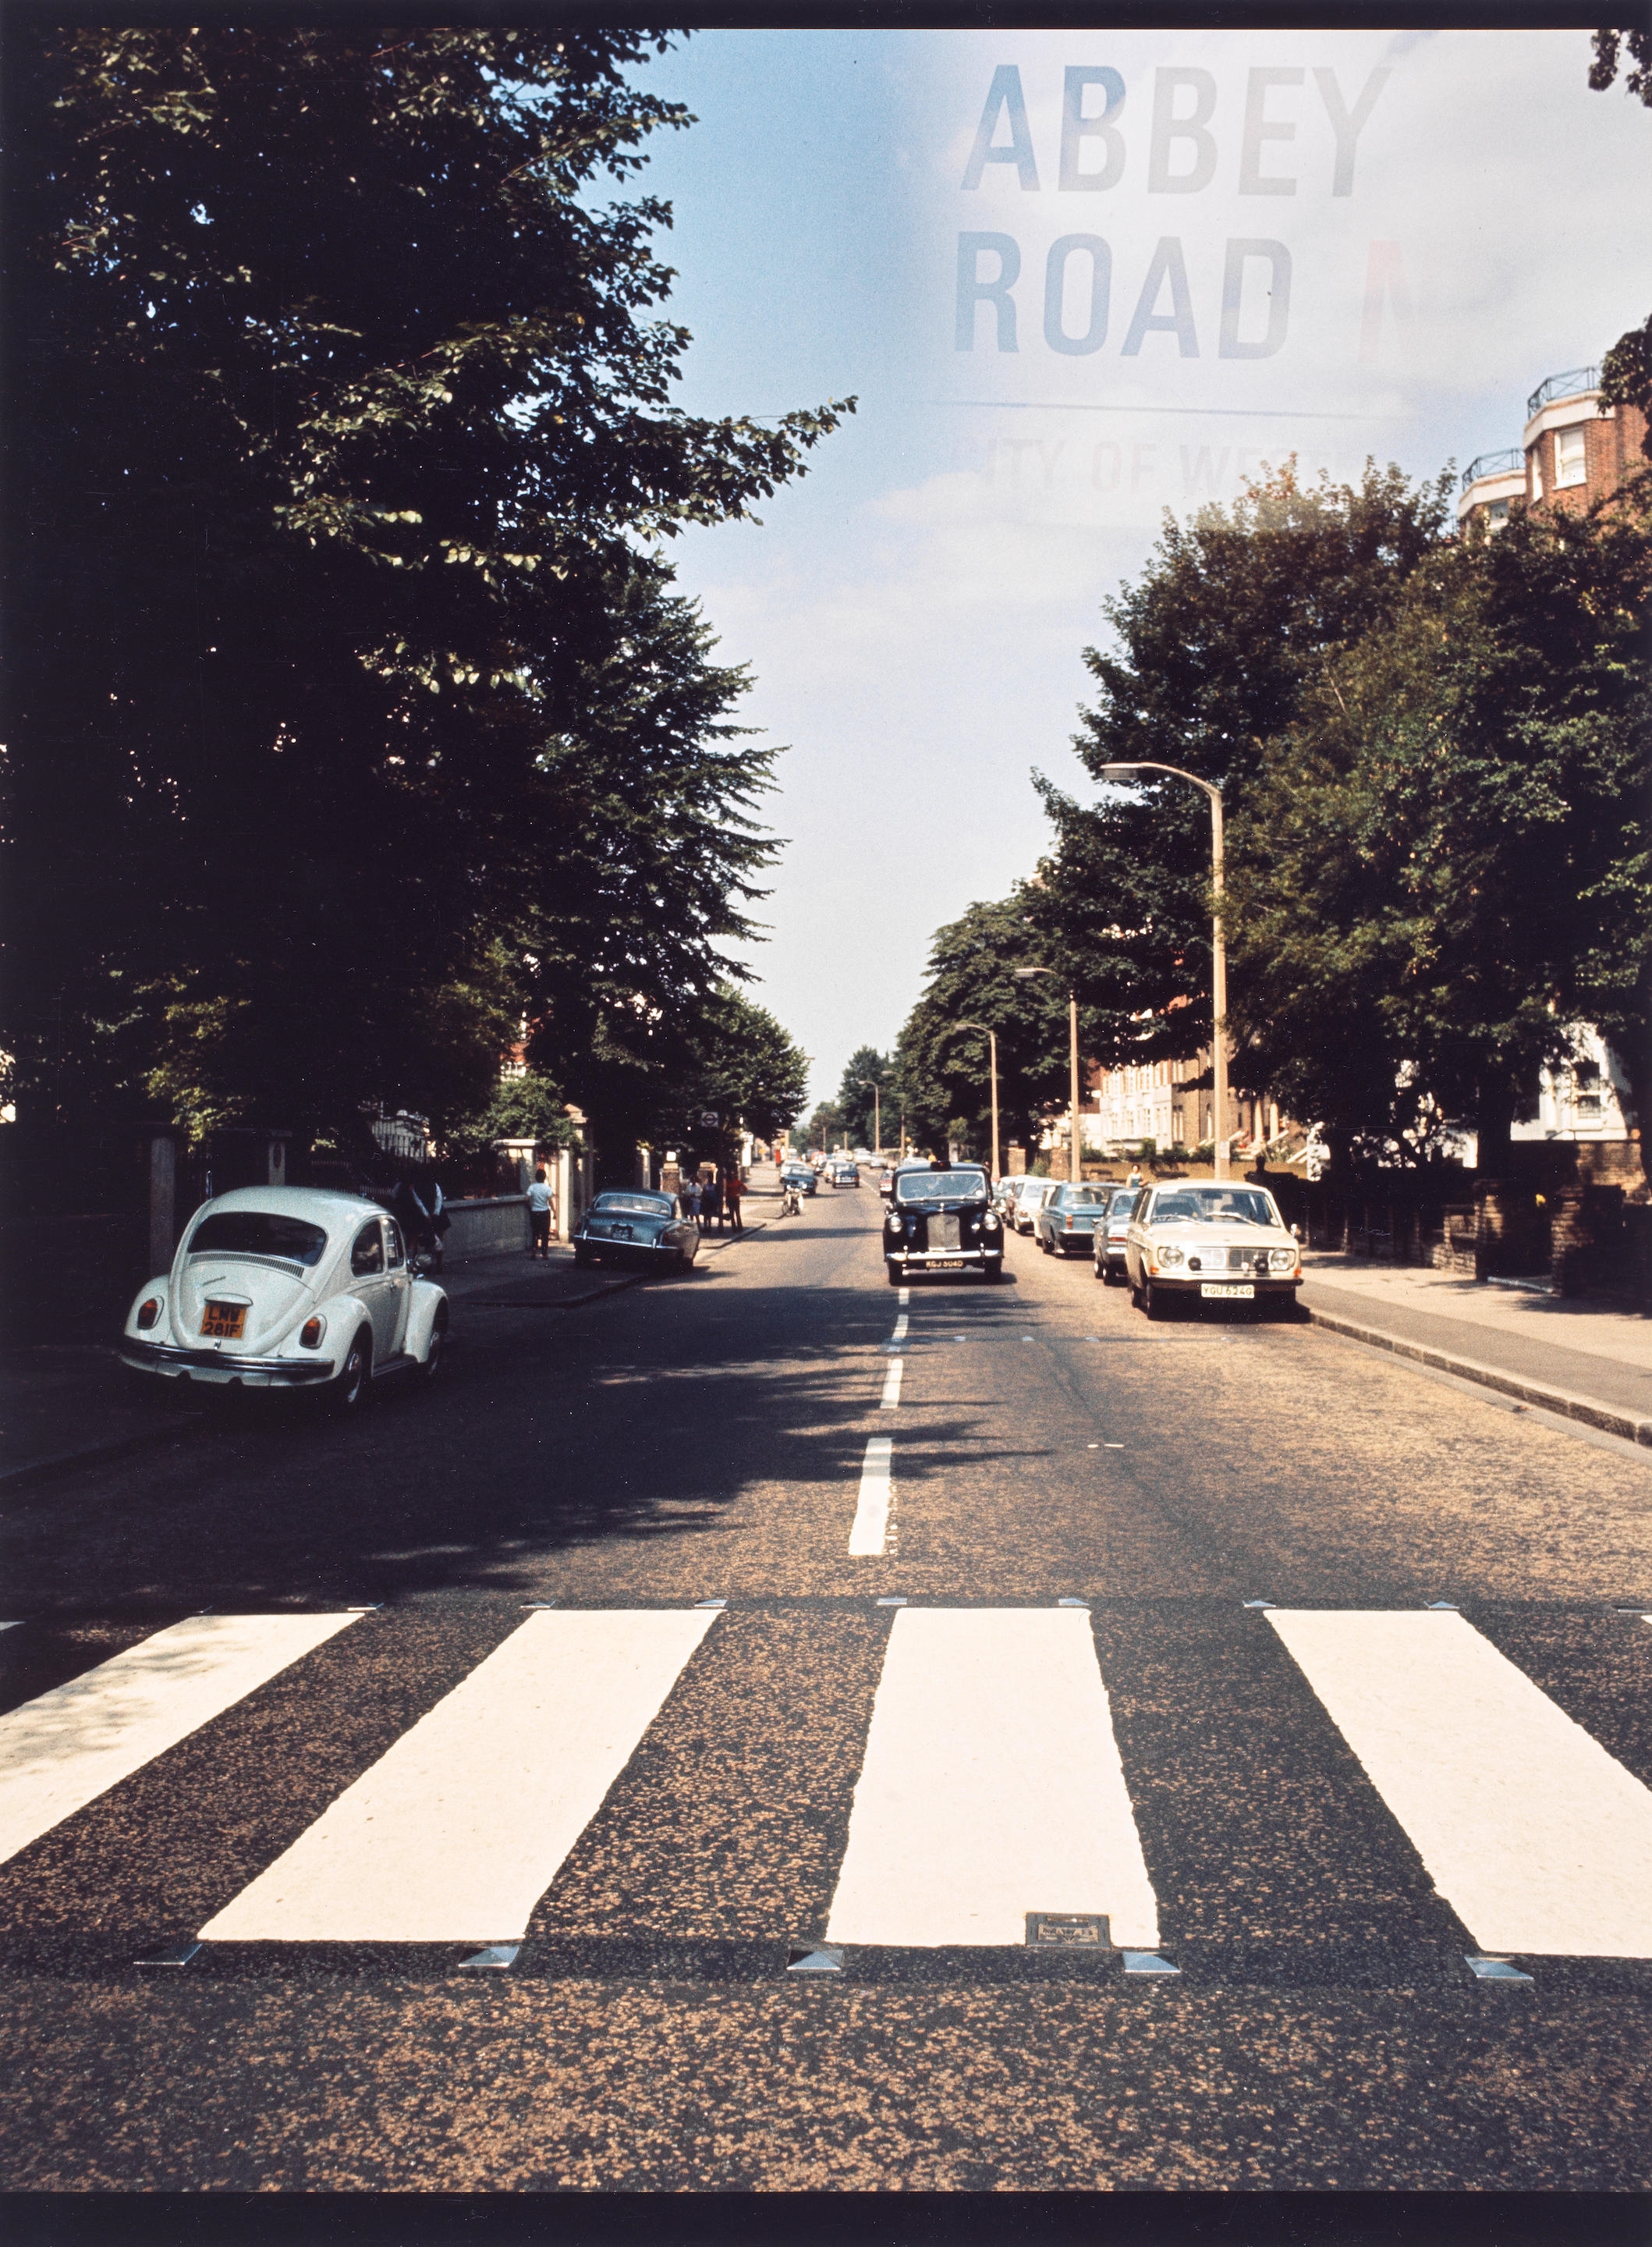 Abbey Road by Iain MacMillan, 1969